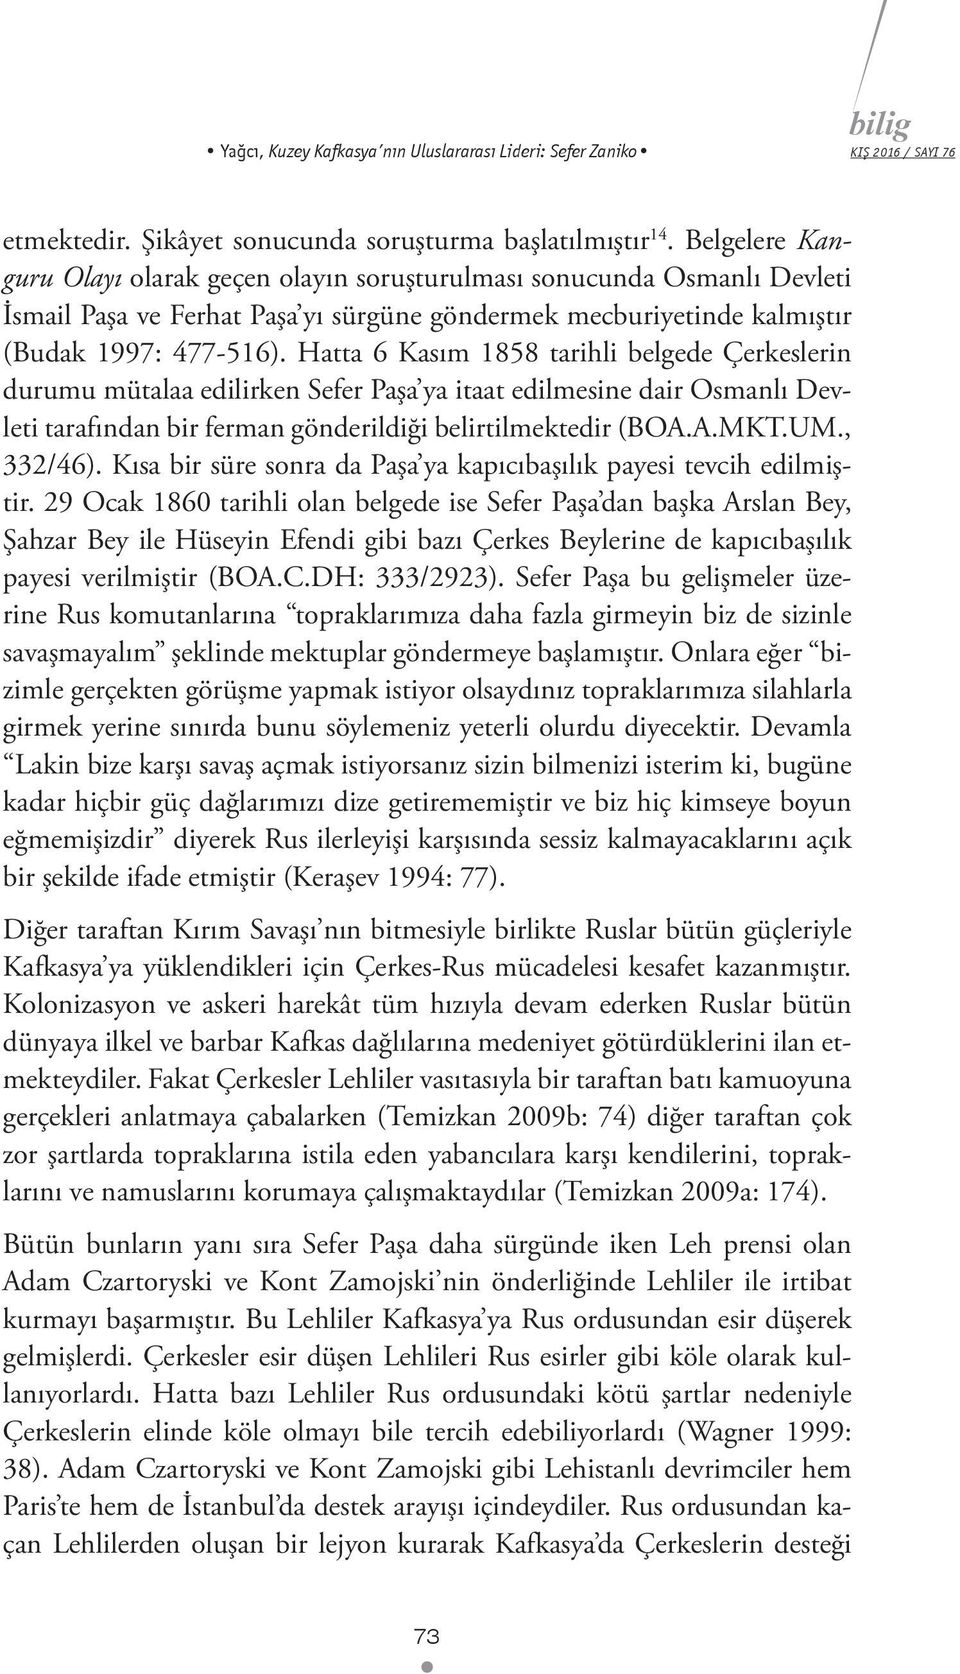 Hatta 6 Kasım 1858 tarihli belgede Çerkeslerin durumu mütalaa edilirken Sefer Paşa ya itaat edilmesine dair Osmanlı Devleti tarafından bir ferman gönderildiği belirtilmektedir (BOA.A.MKT.UM., 332/46).